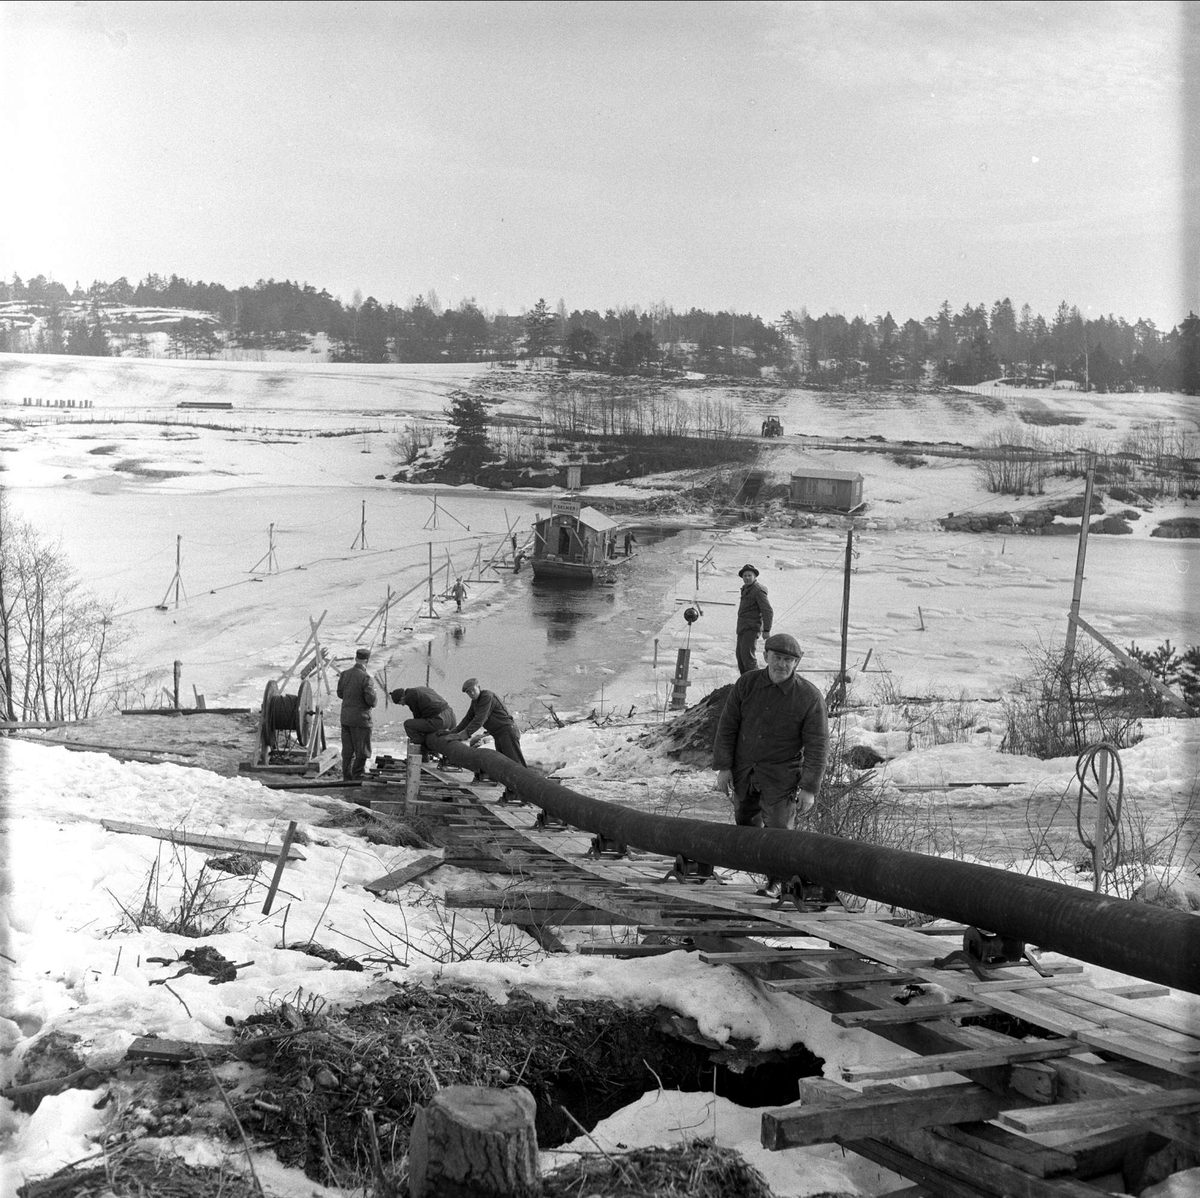 Trelleborg Gummi legger ut slange ved Sarpsborg, mars, 1959.